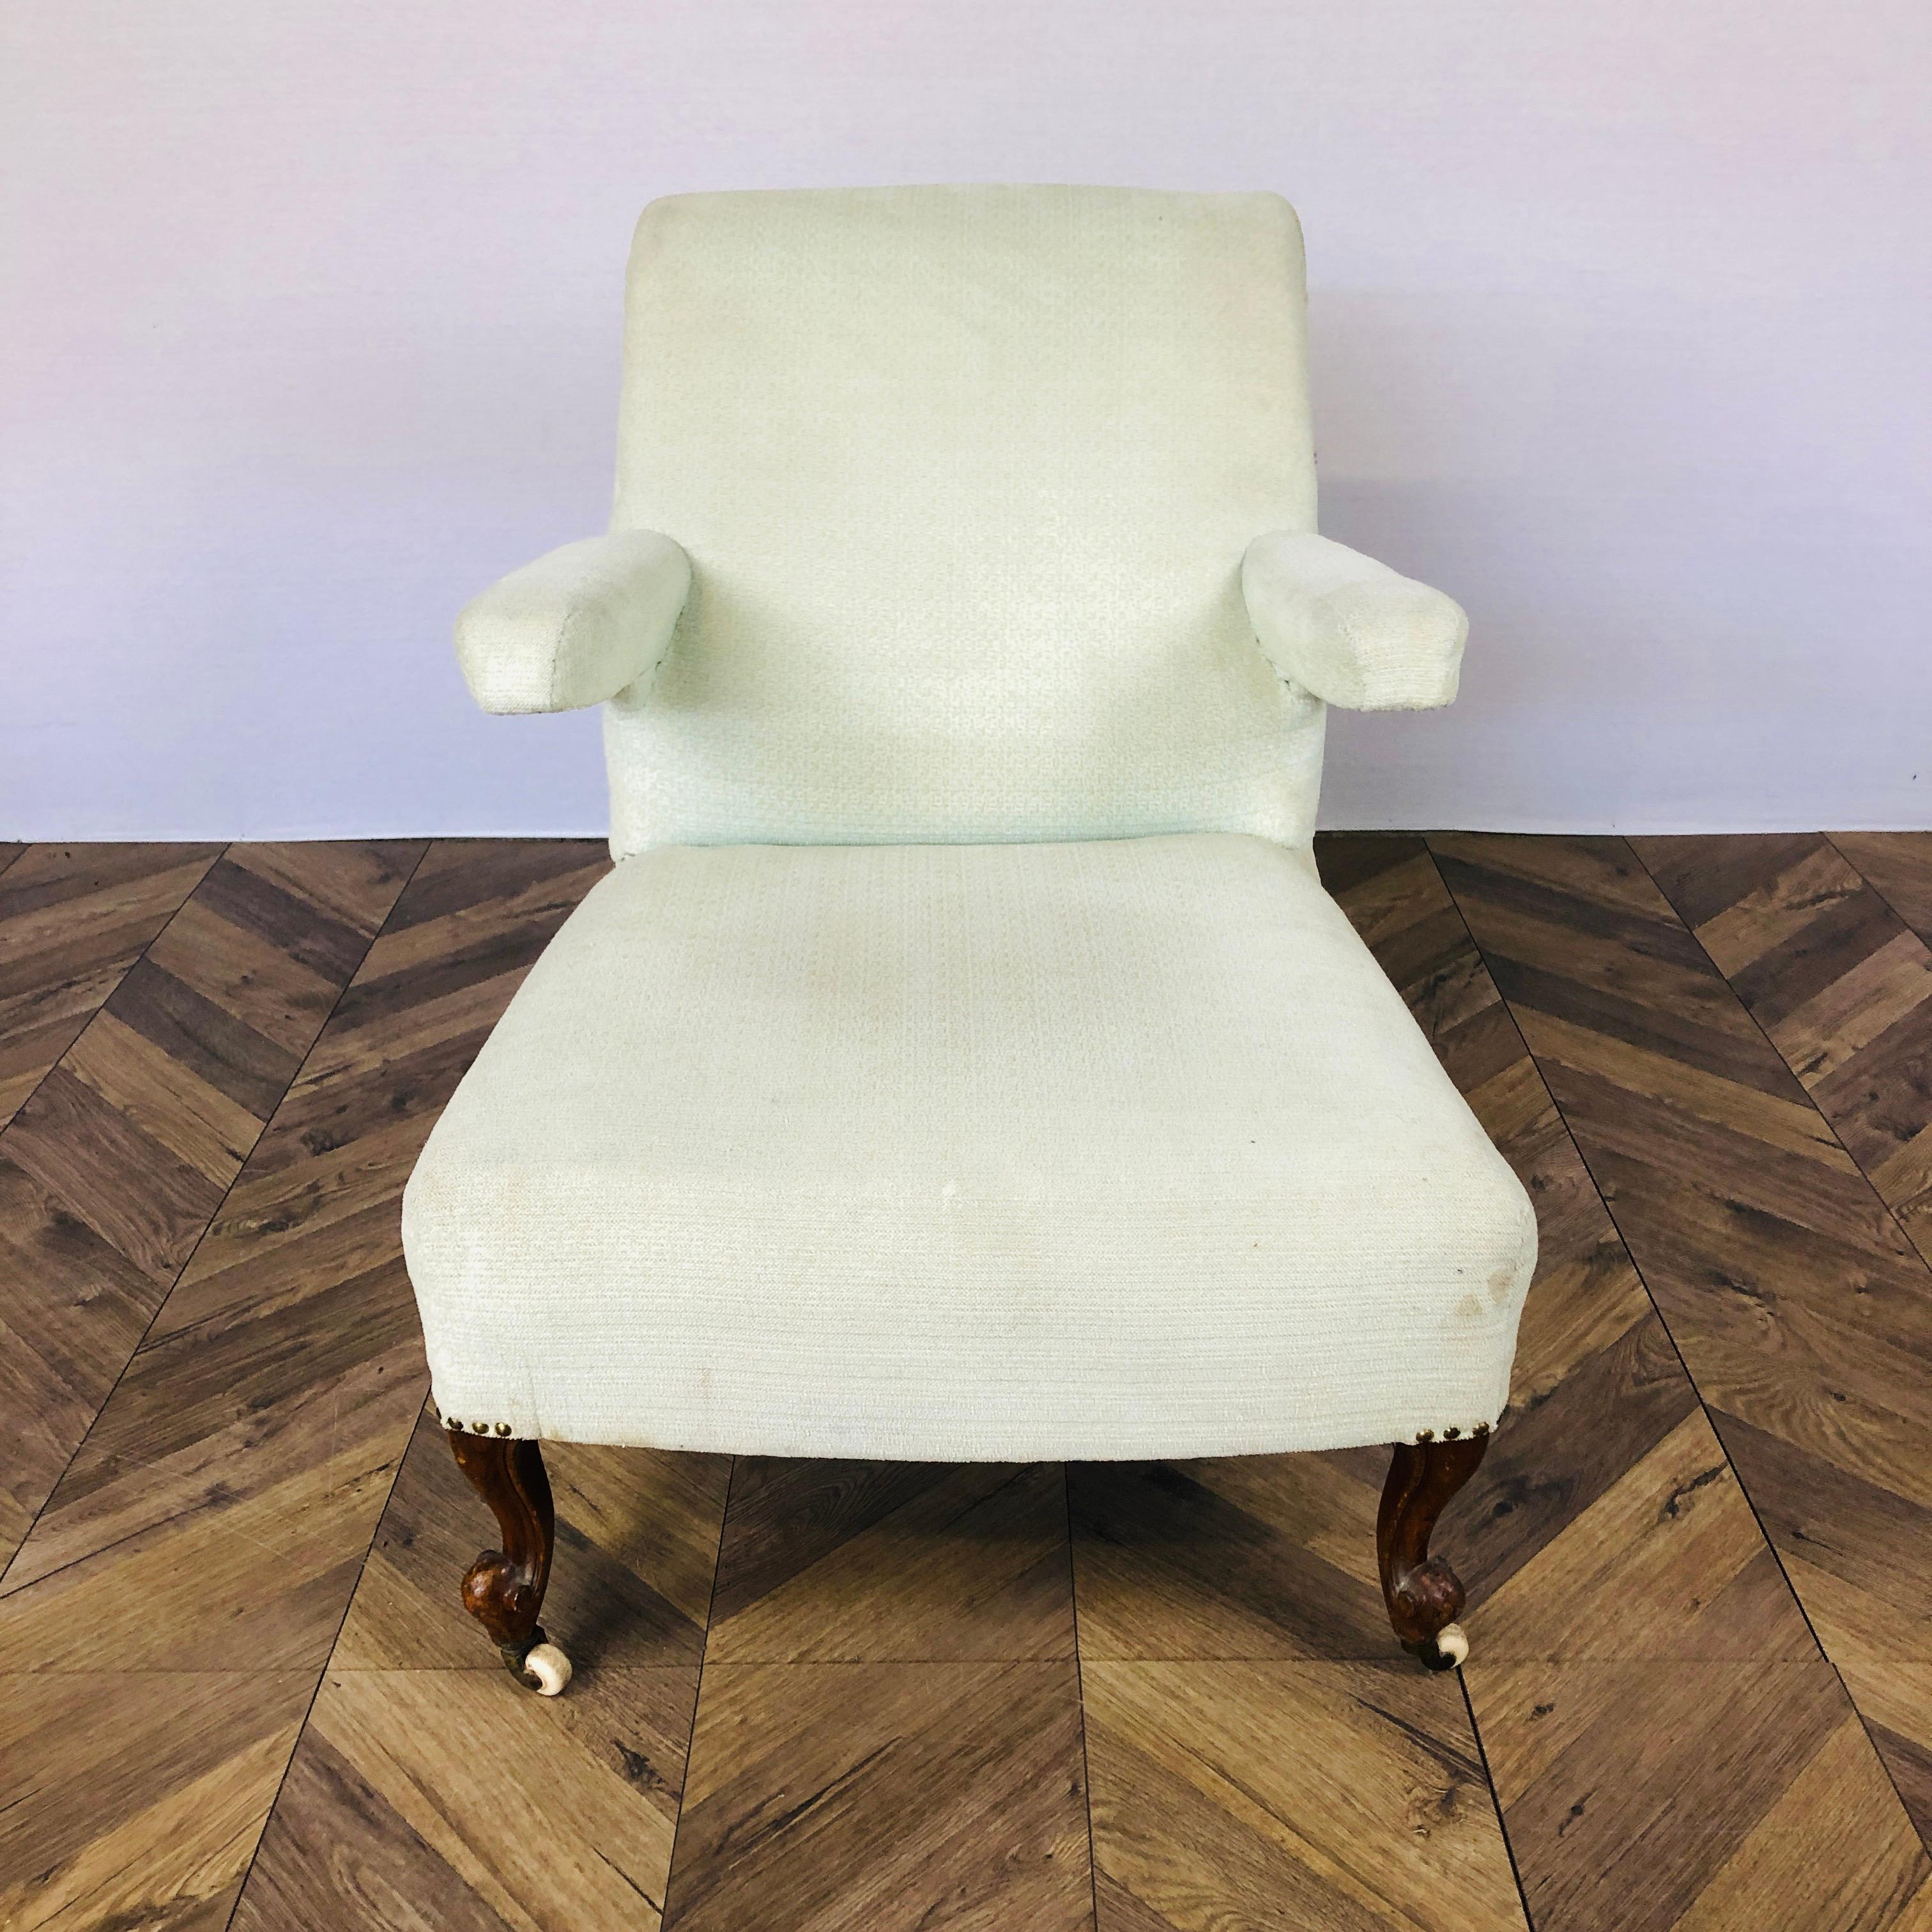 Un fauteuil de salon ou médical victorien bien proportionné et inhabituel. Circa 1850s. 

La chaise est dotée d'un dossier incliné, d'un plateau à volutes/roulé et d'accoudoirs flottants. La chaise repose sur des roulettes d'origine et 4 pieds